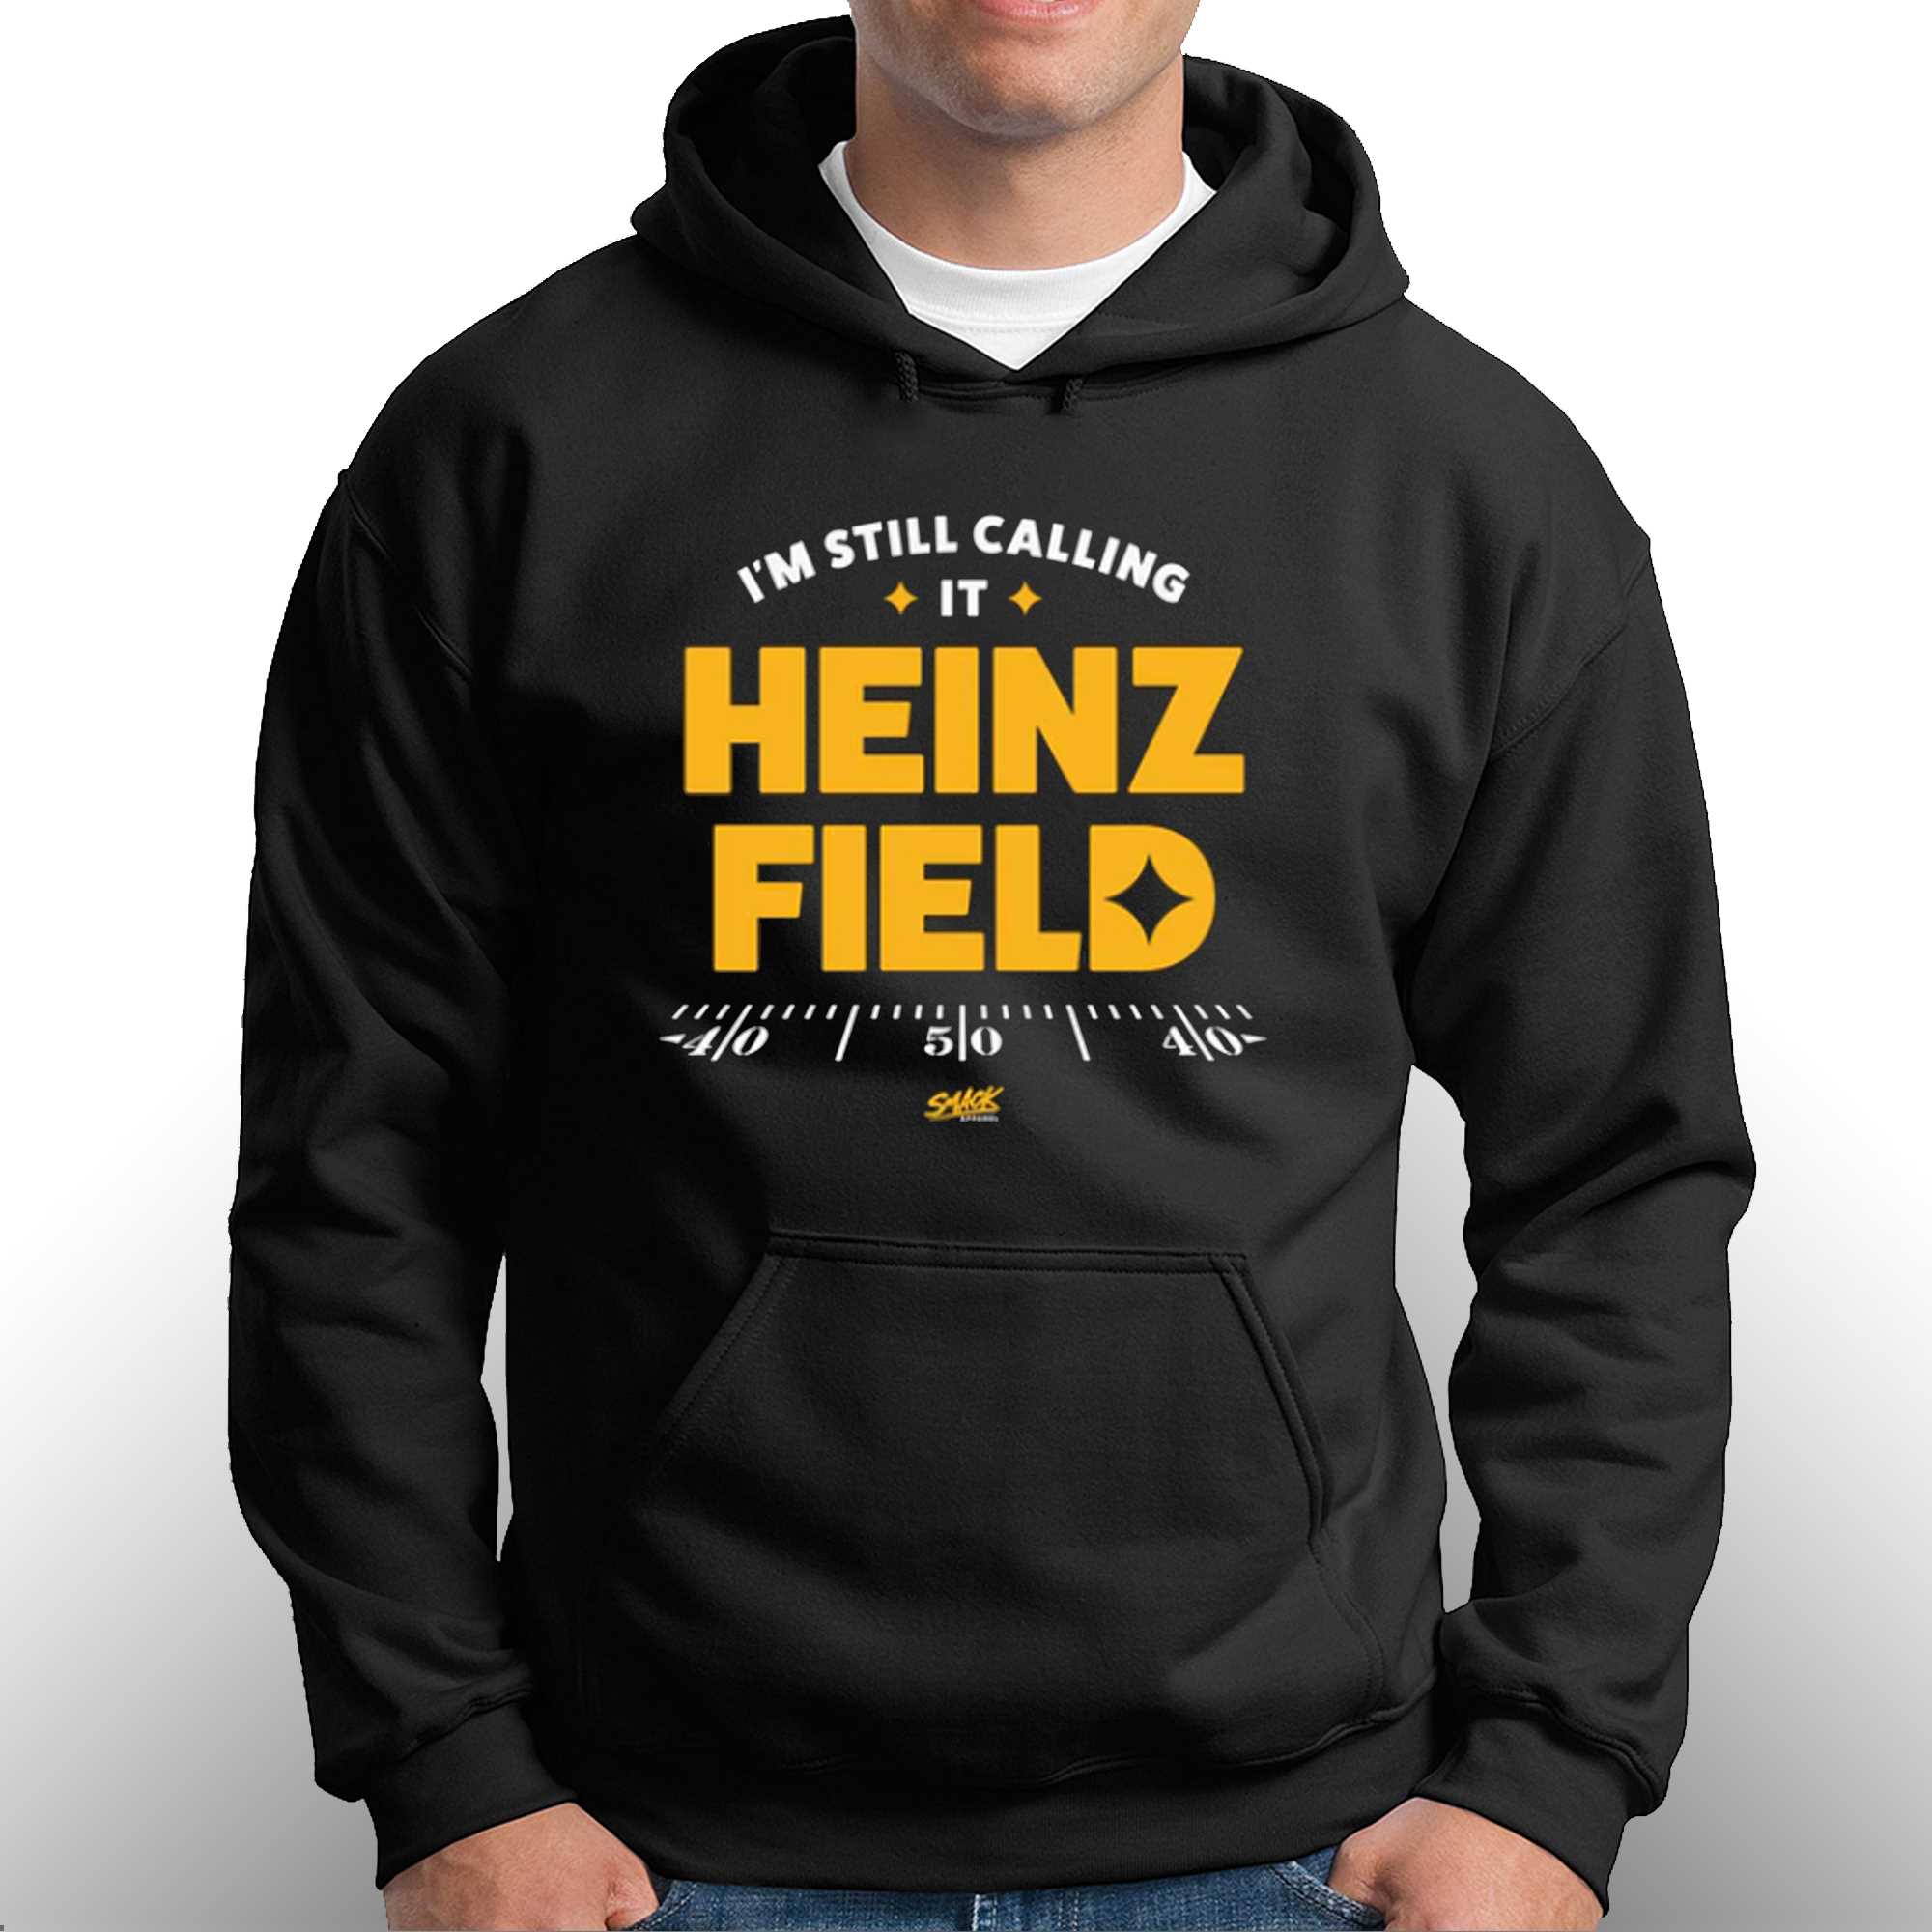 heinz field shirt